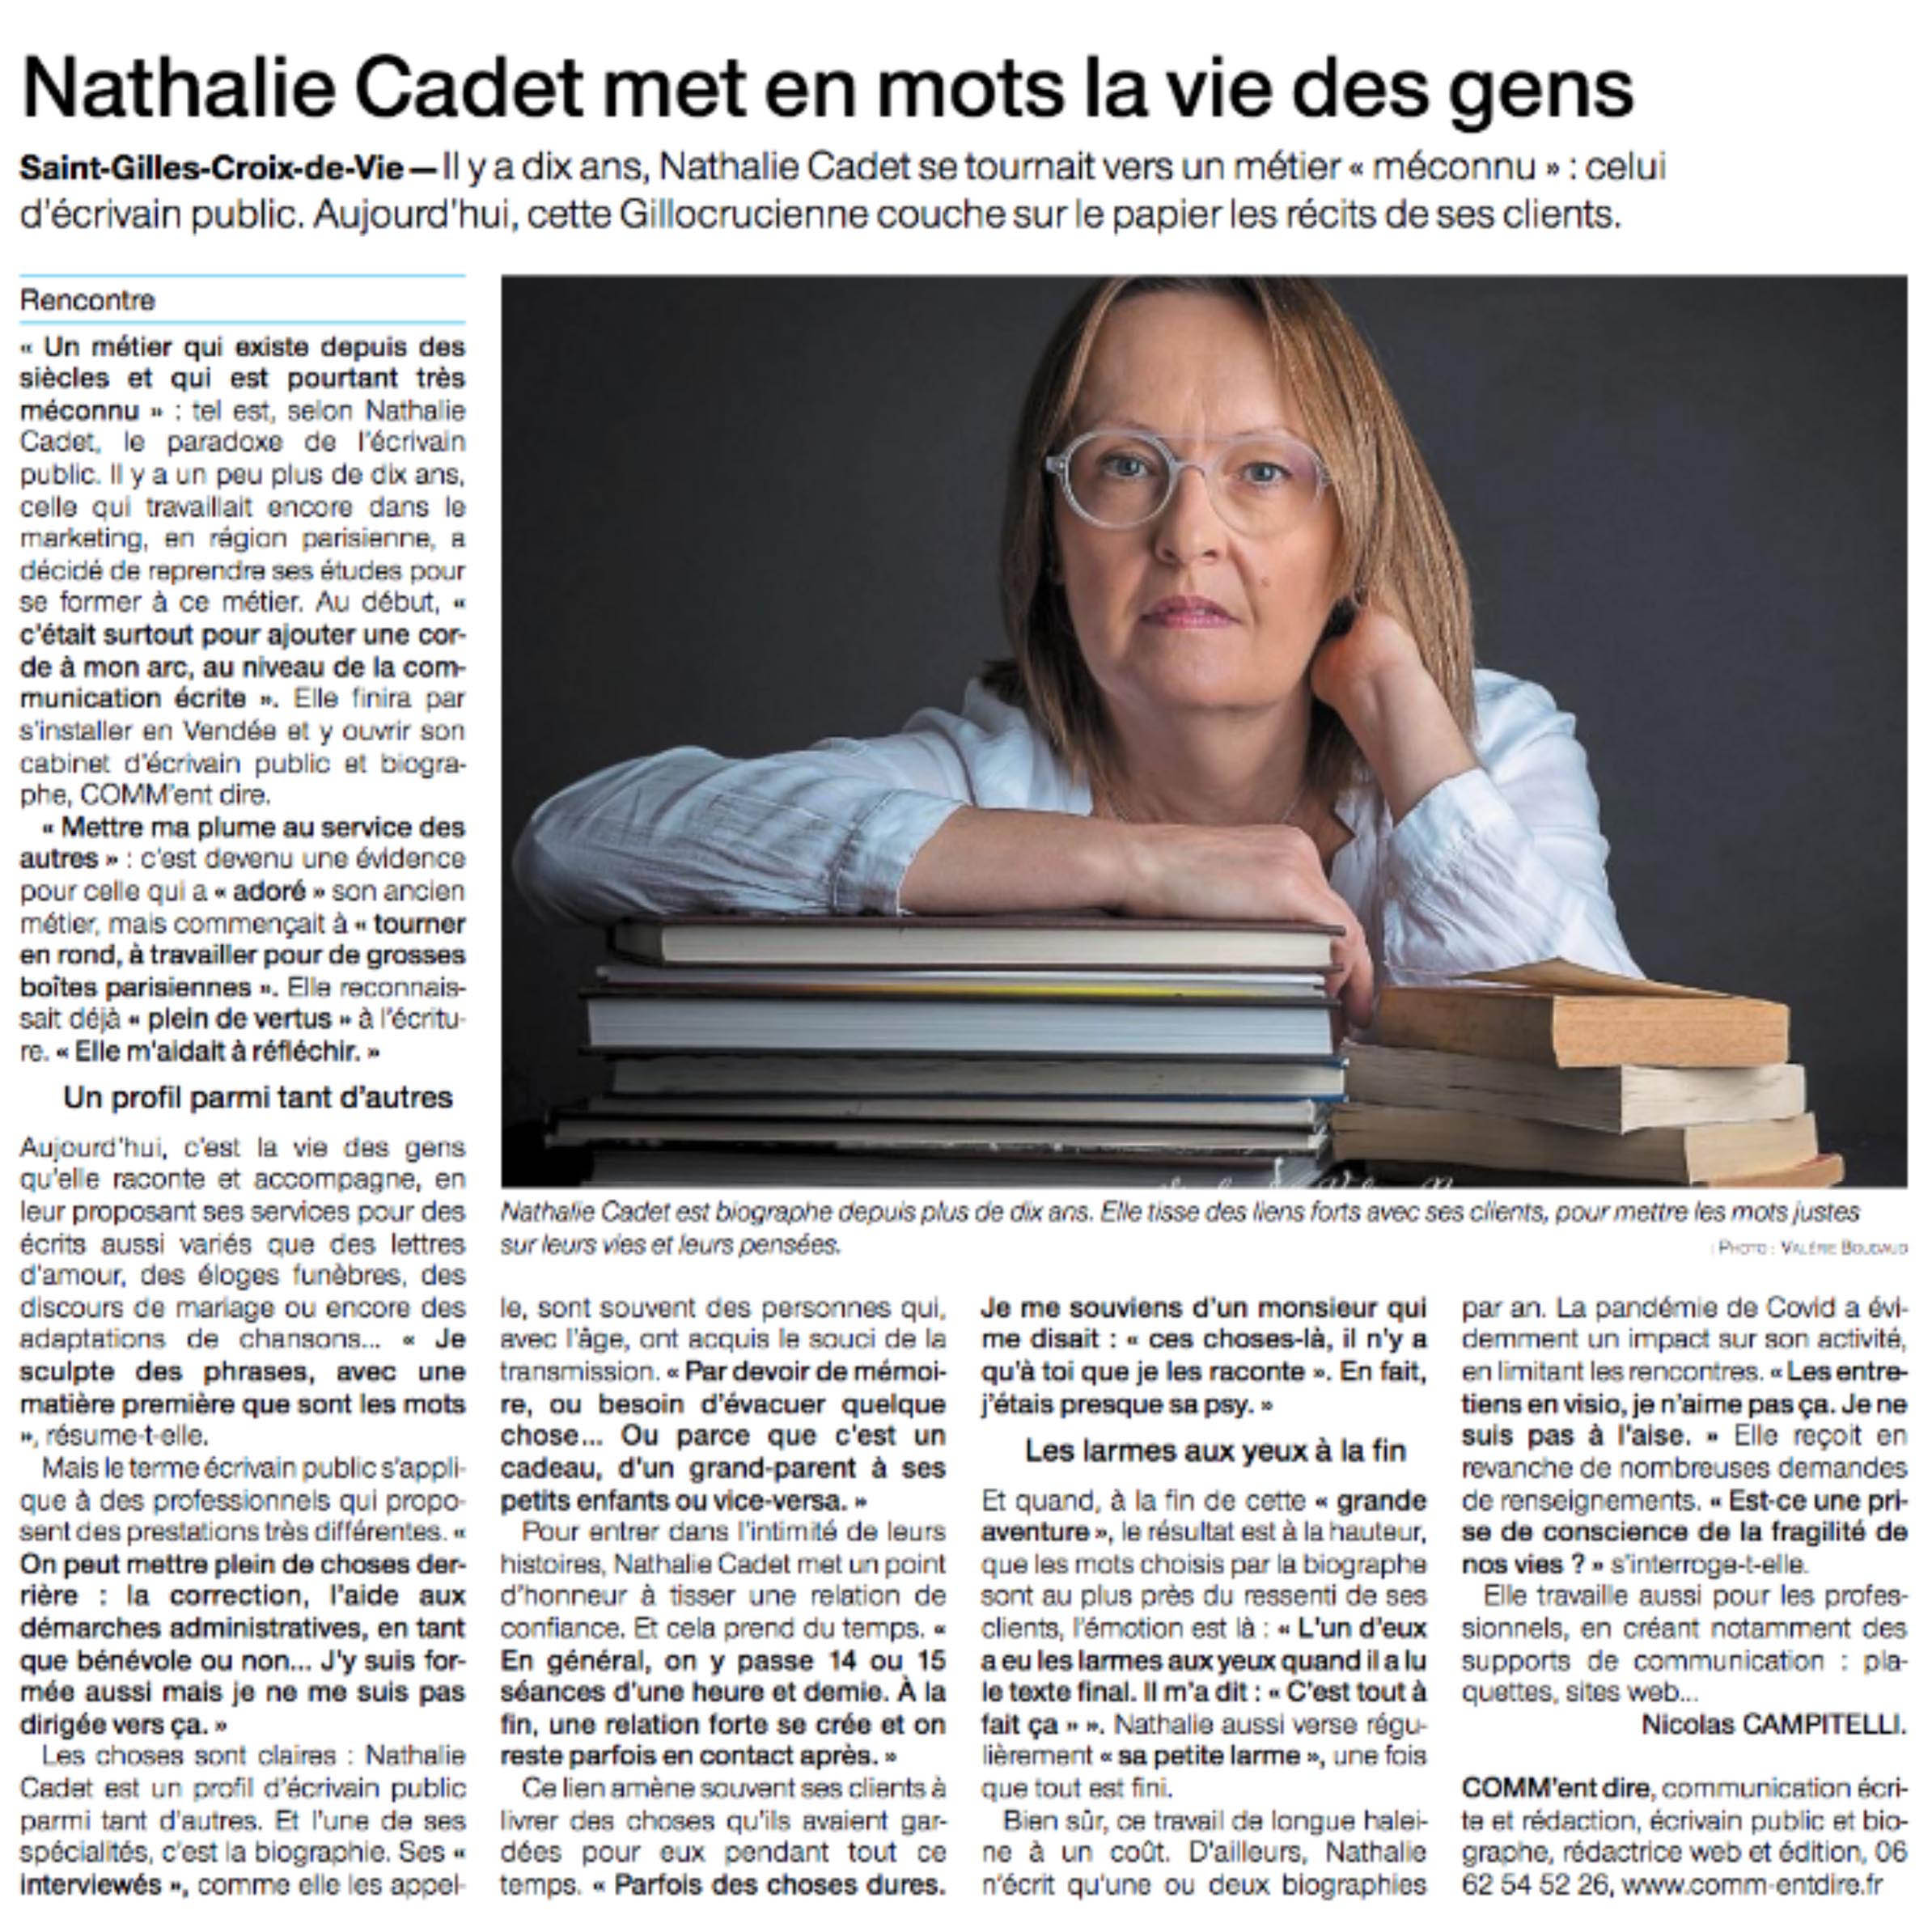 Nathalie Cadet biographe Vendée Ouest France 12 12 20.jpg